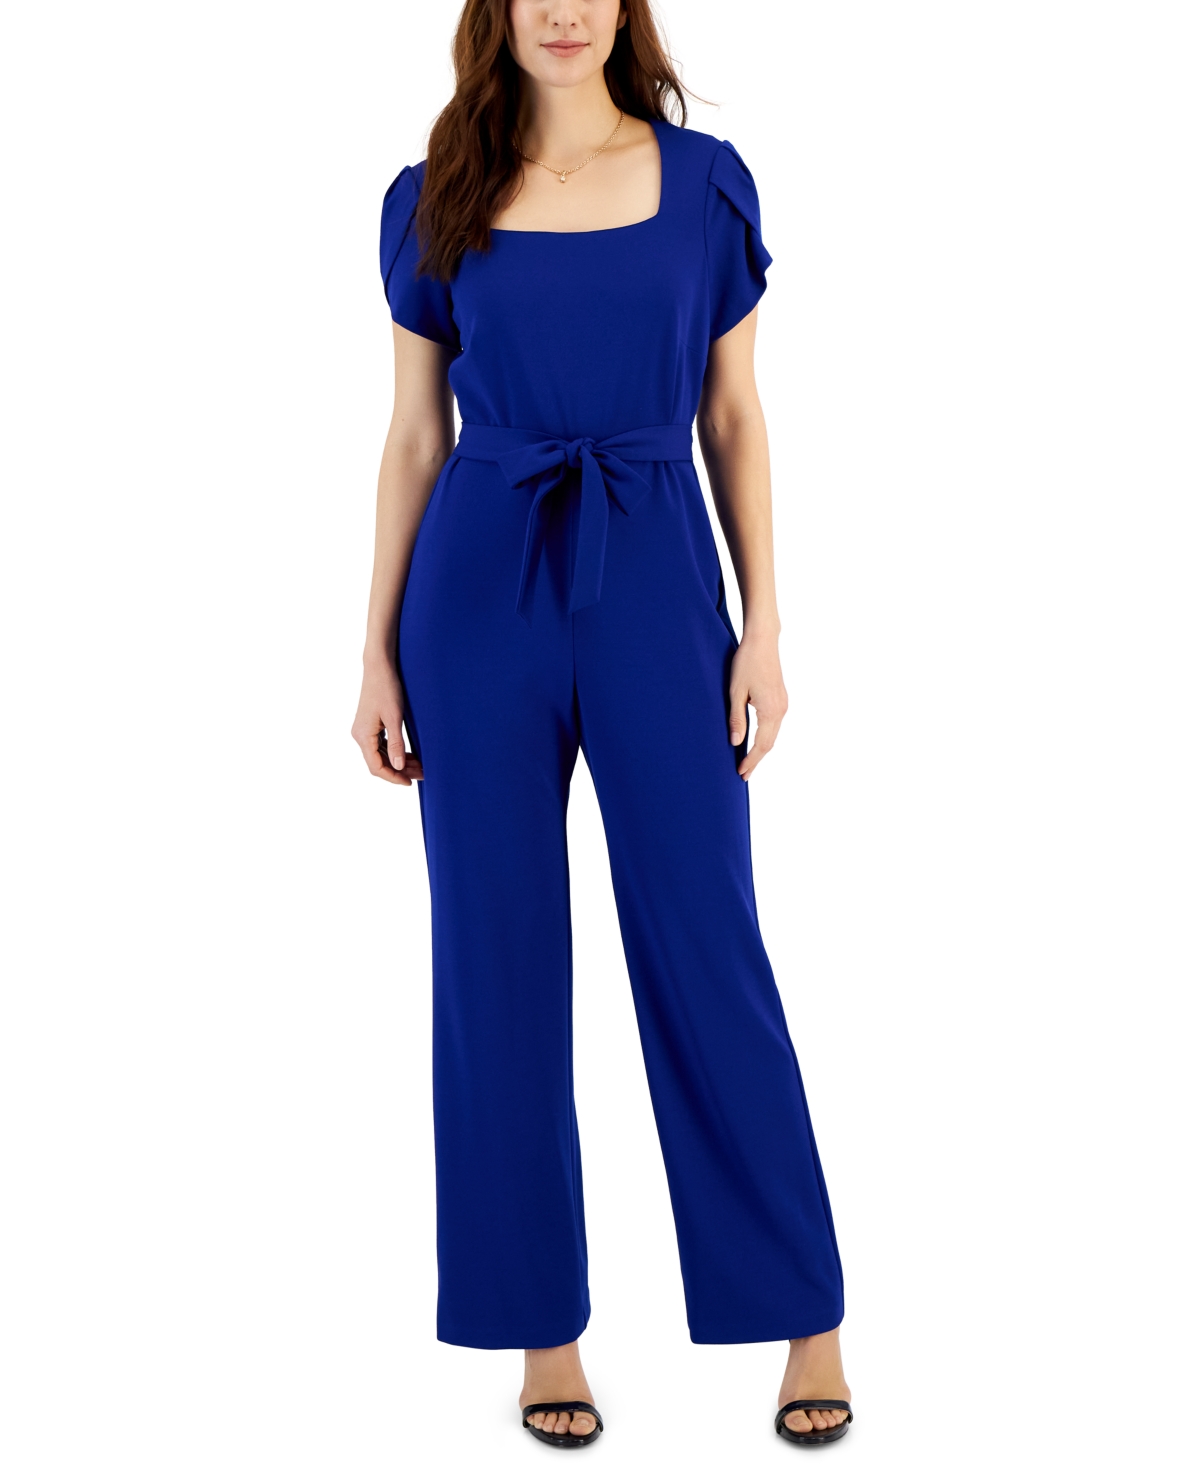 Women's Petal-Sleeve Tie-Waist Square-Neck Jumpsuit - Cobalt Blue